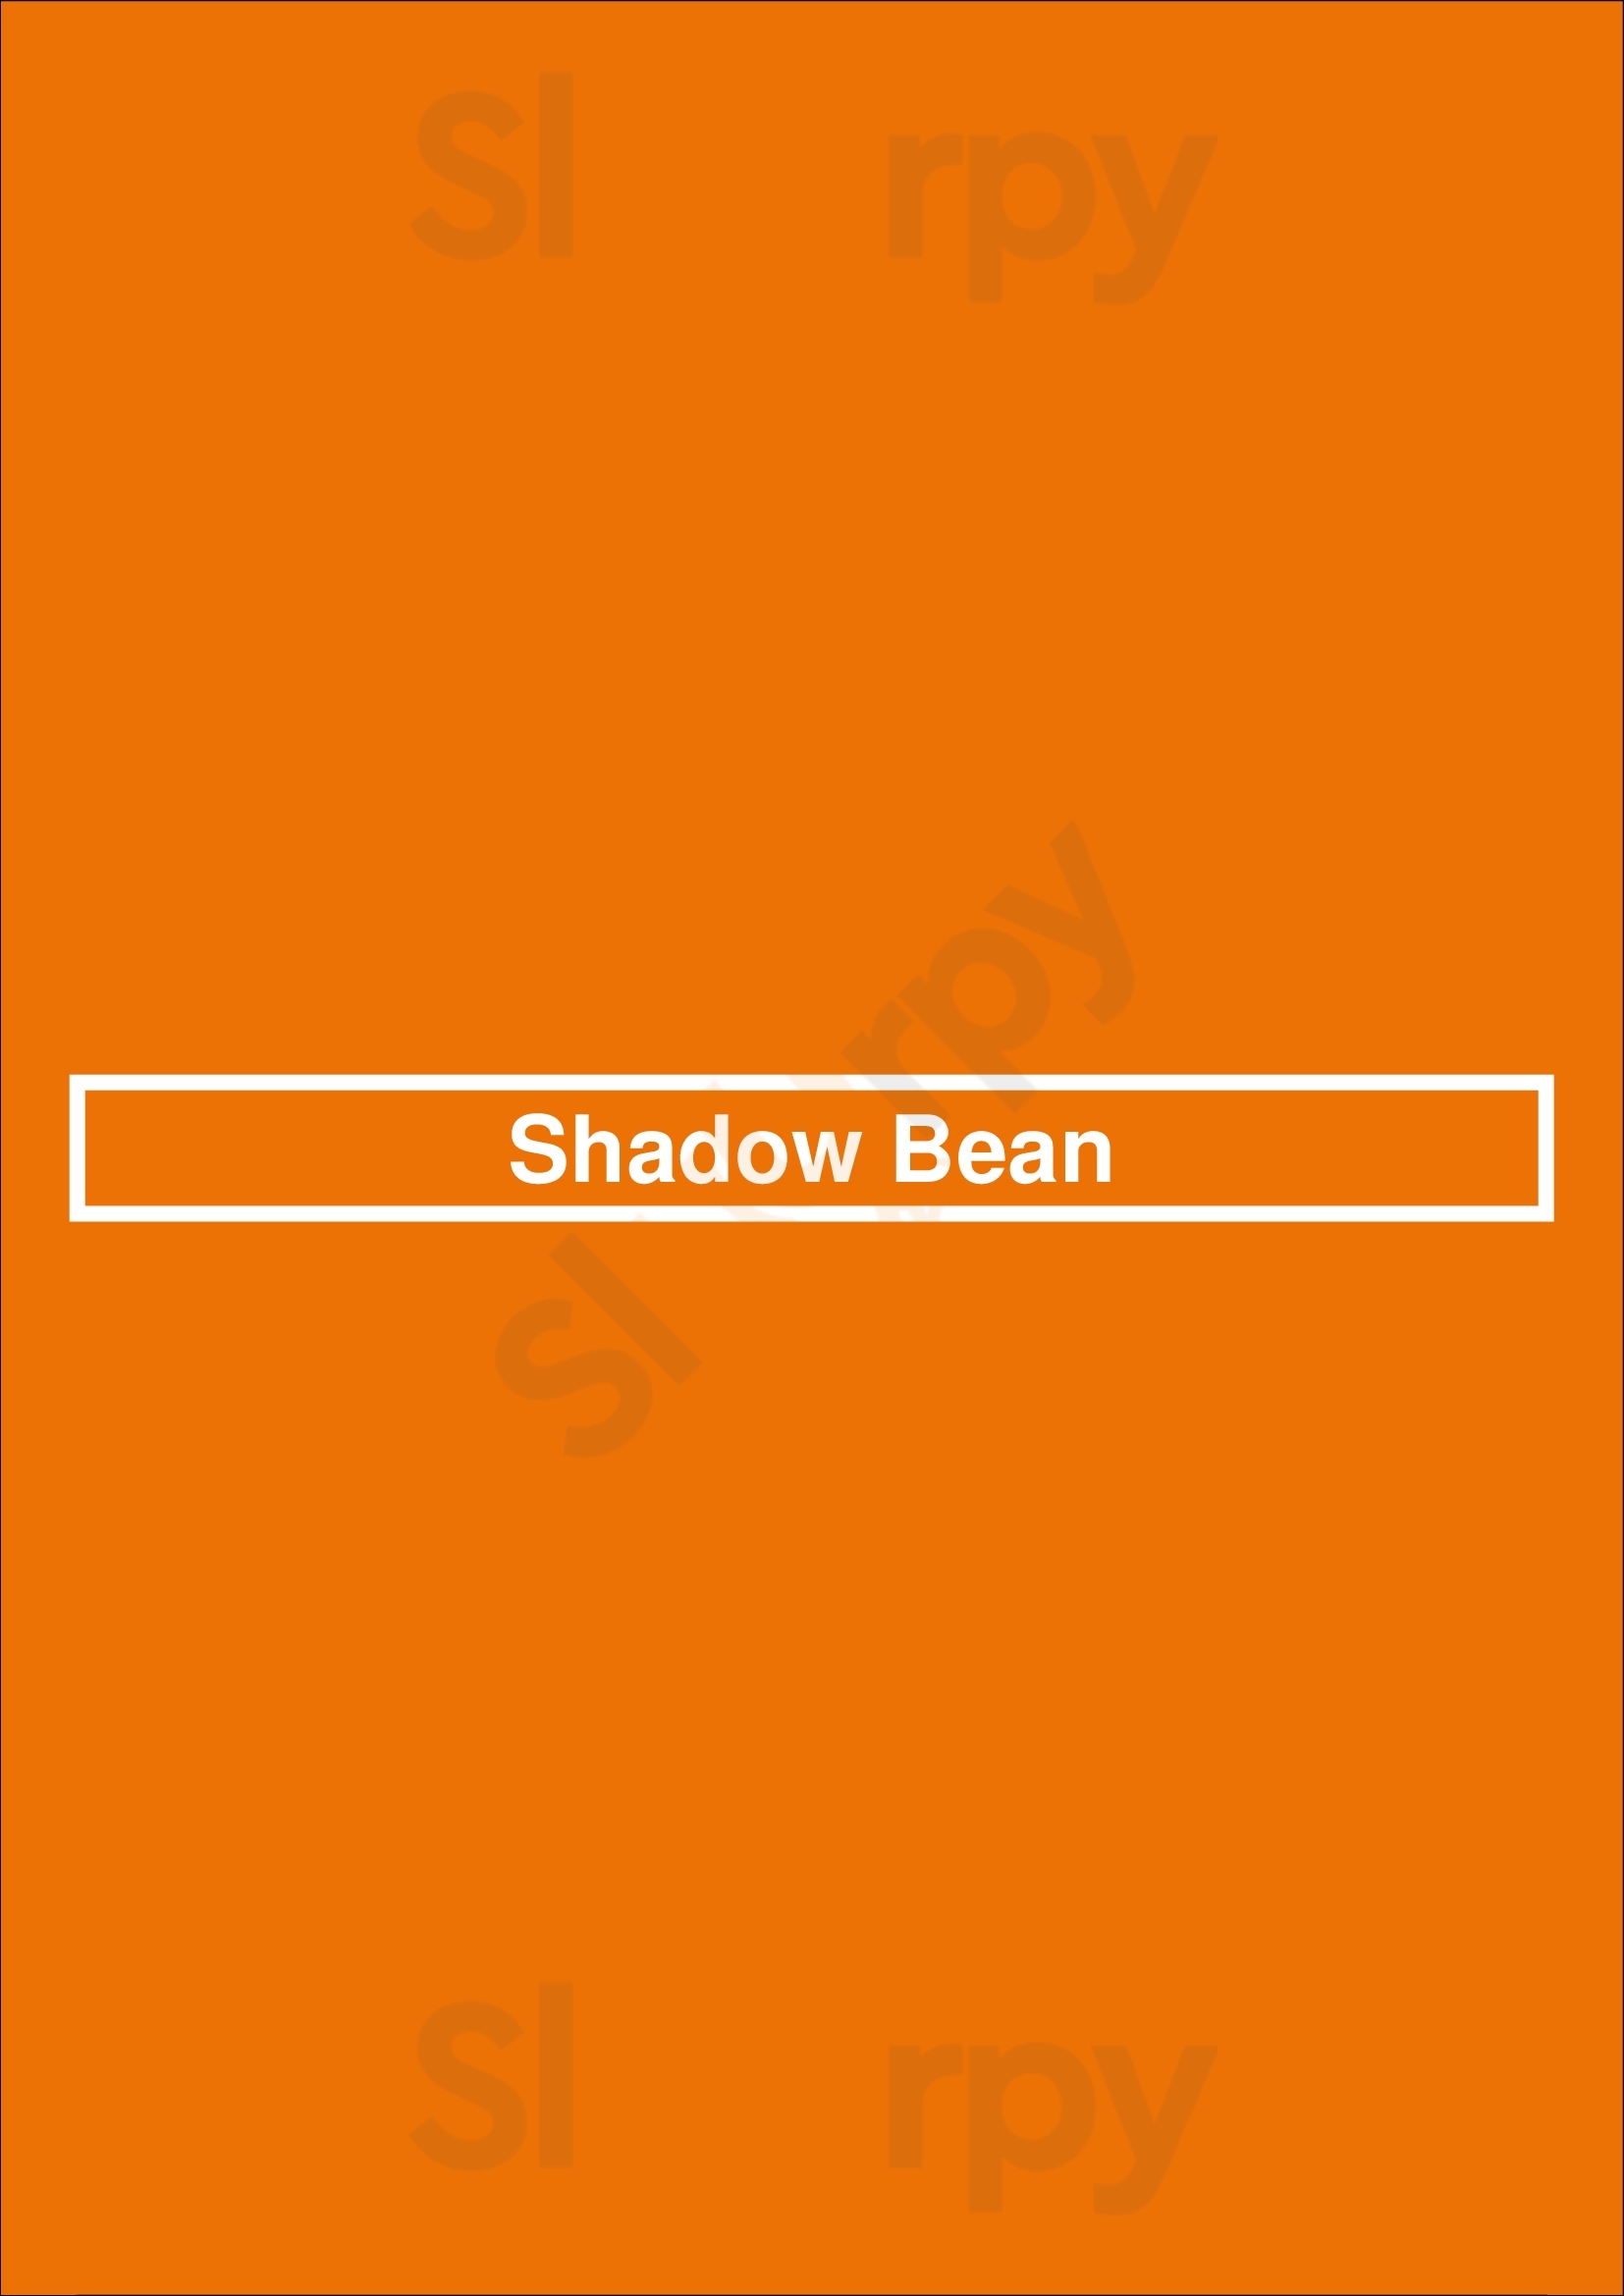 Shadow Bean Café & Bar München Menu - 1